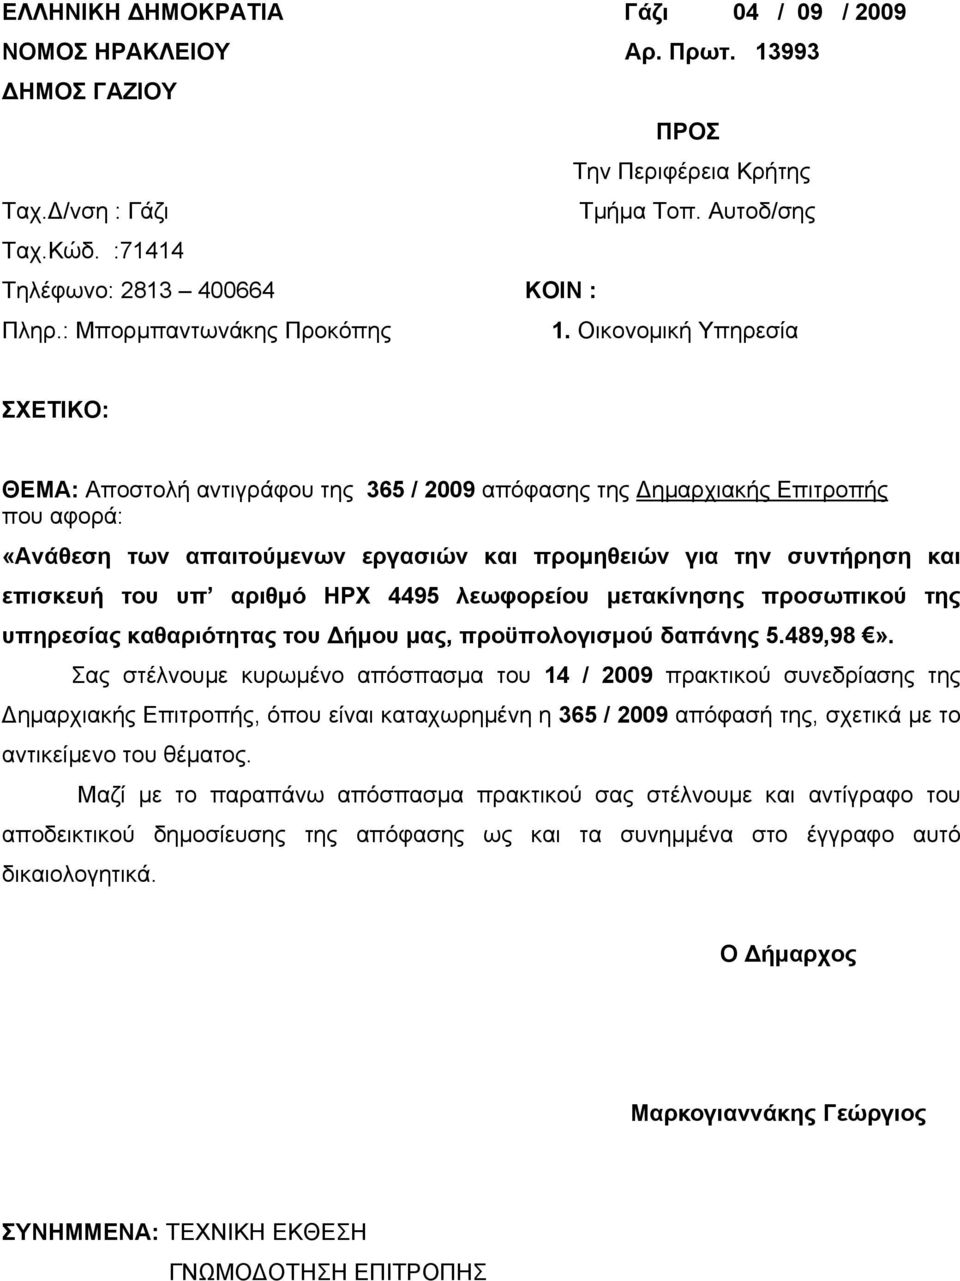 Οικονομική Υπηρεσία ΣΧΕΤΙΚΟ: ΘΕΜΑ: Αποστολή αντιγράφου της 365 / 2009 απόφασης της Δημαρχιακής Επιτροπής που αφορά: «Ανάθεση των απαιτούμενων εργασιών και προμηθειών για την συντήρηση και επισκευή